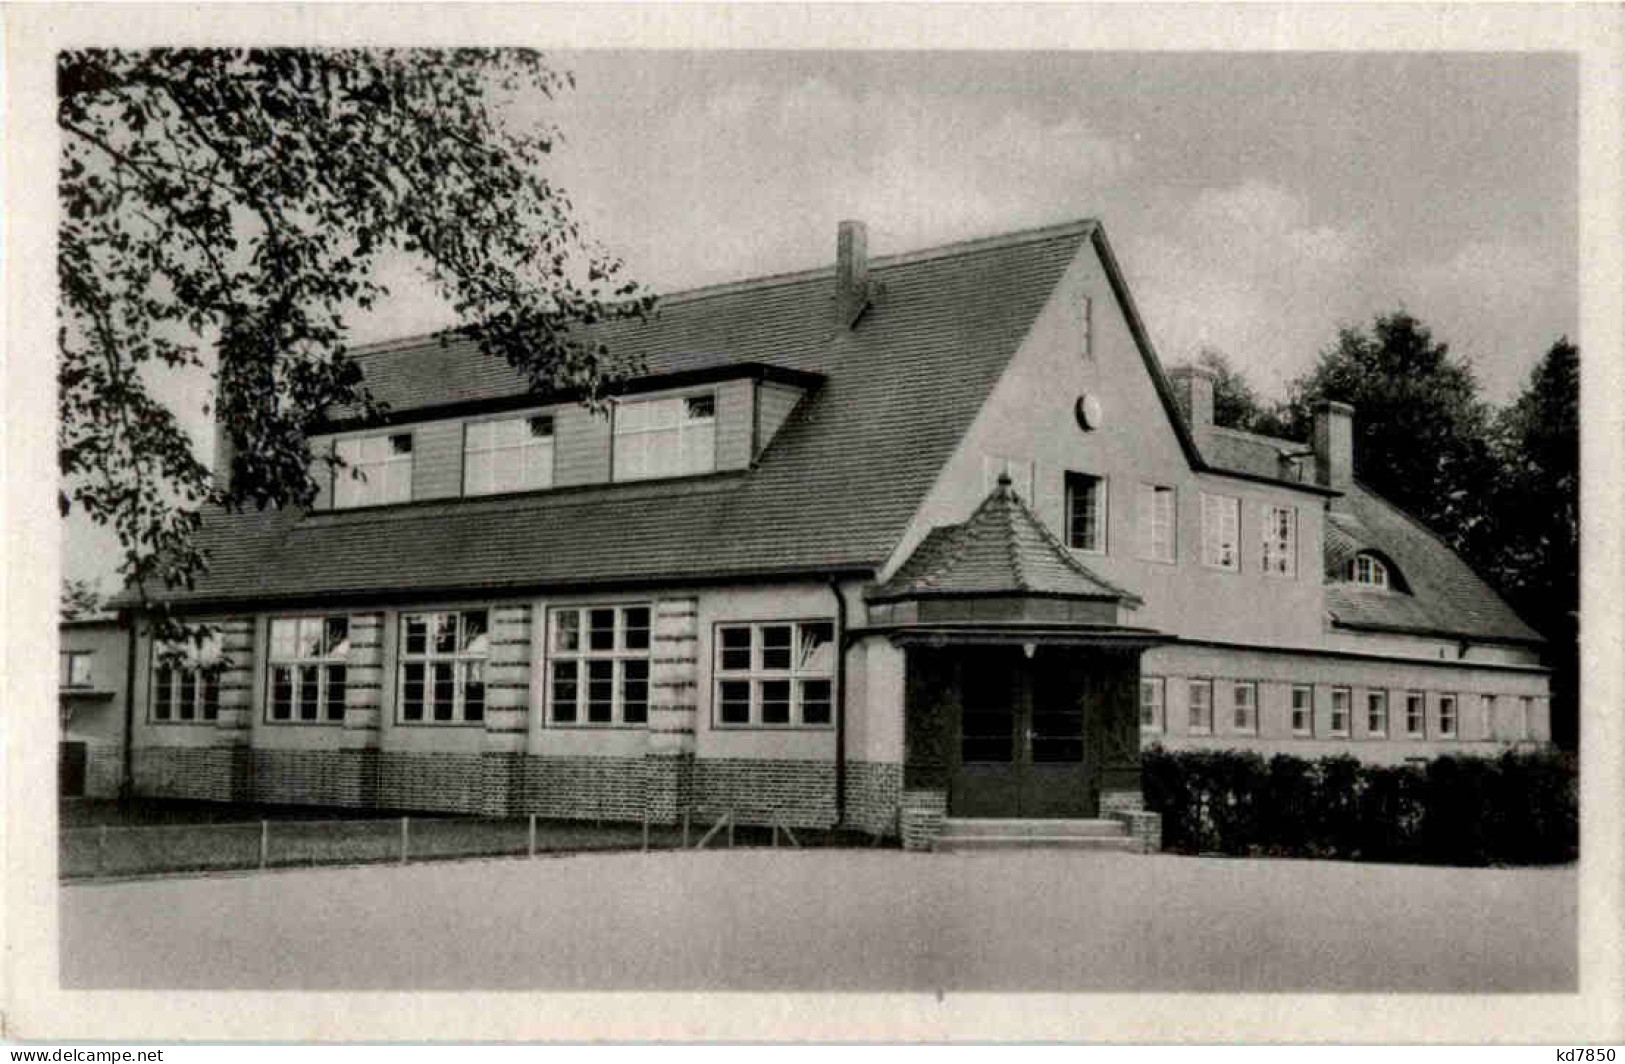 Oranienburg-Eden - Schule - Oranienburg